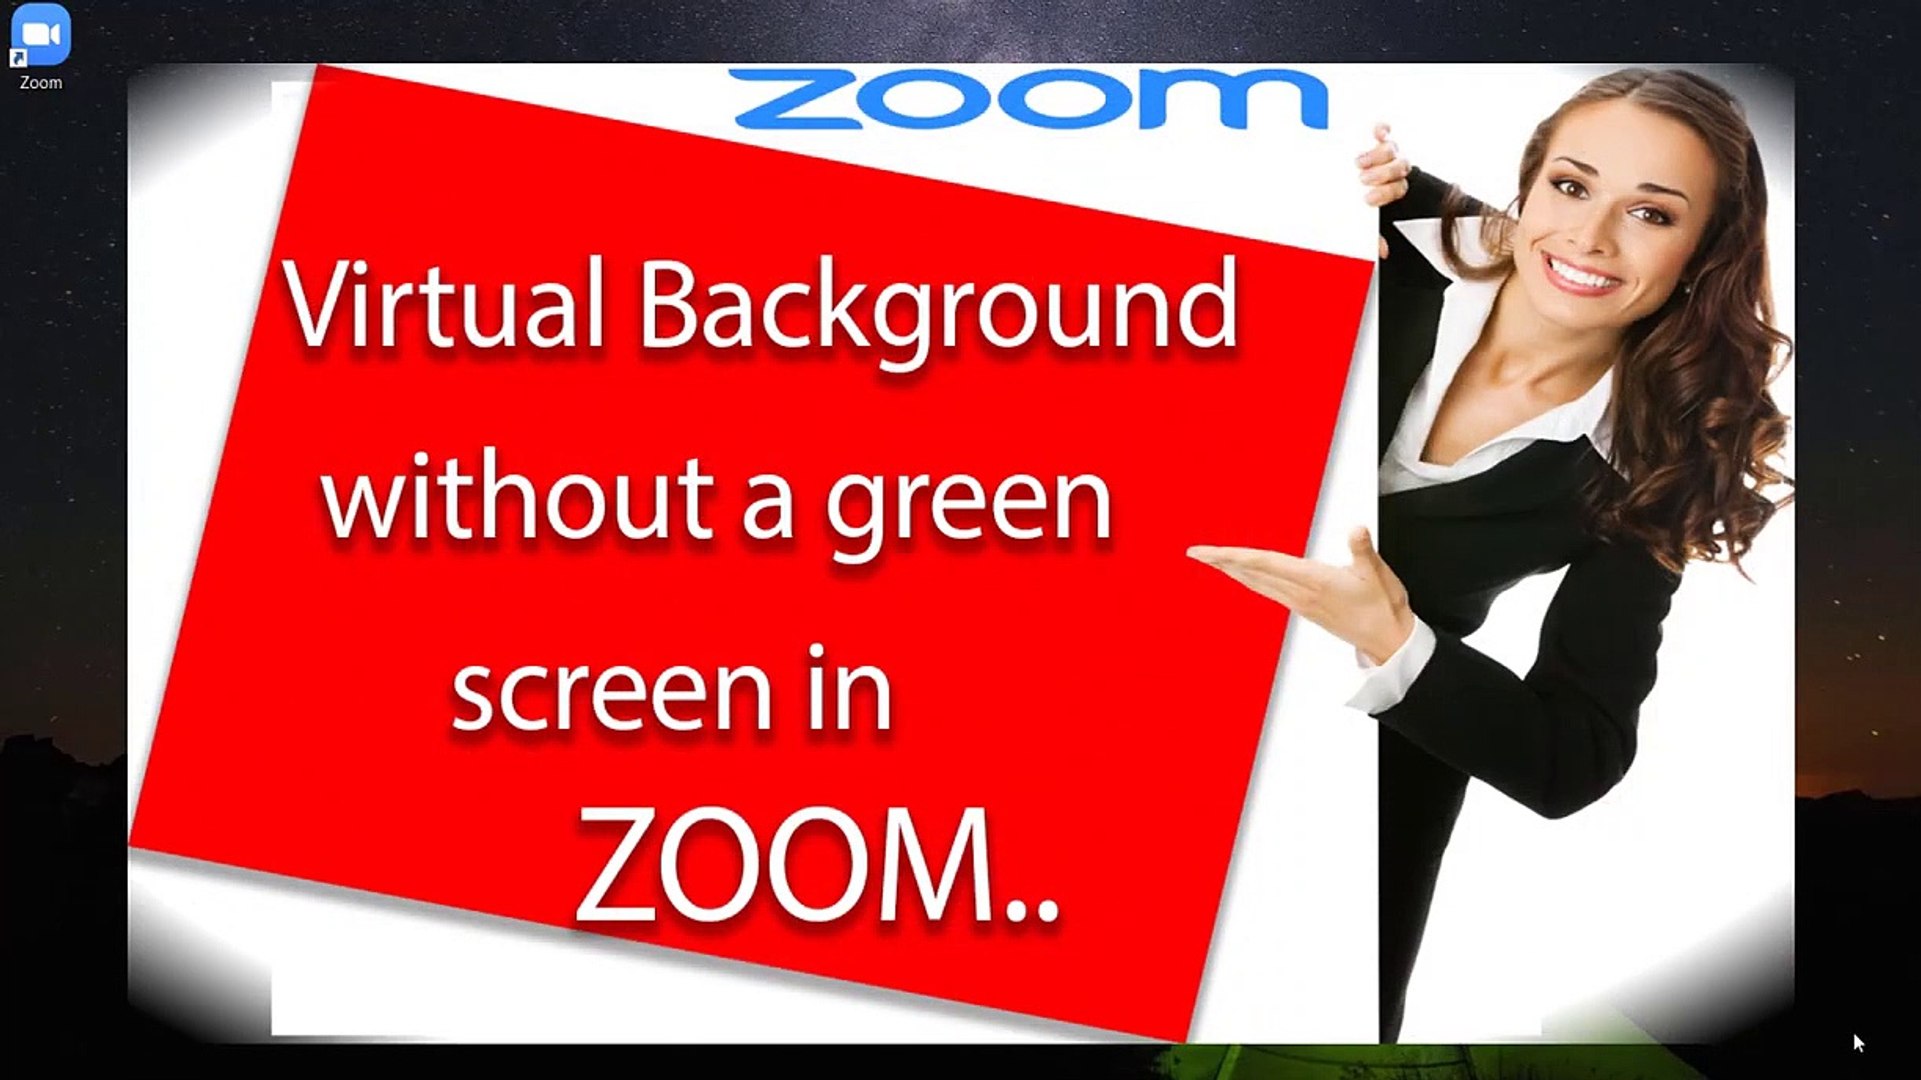 Bạn muốn tạo không gian mới lạ cho cuộc họp trực tuyến trên Zoom? Hãy khám phá ngay ảnh nền ảo độc đáo chỉ dành riêng cho Zoom của chúng tôi. Tạo niềm vui và sự hứng khởi cho từng buổi học hay cuộc họp!